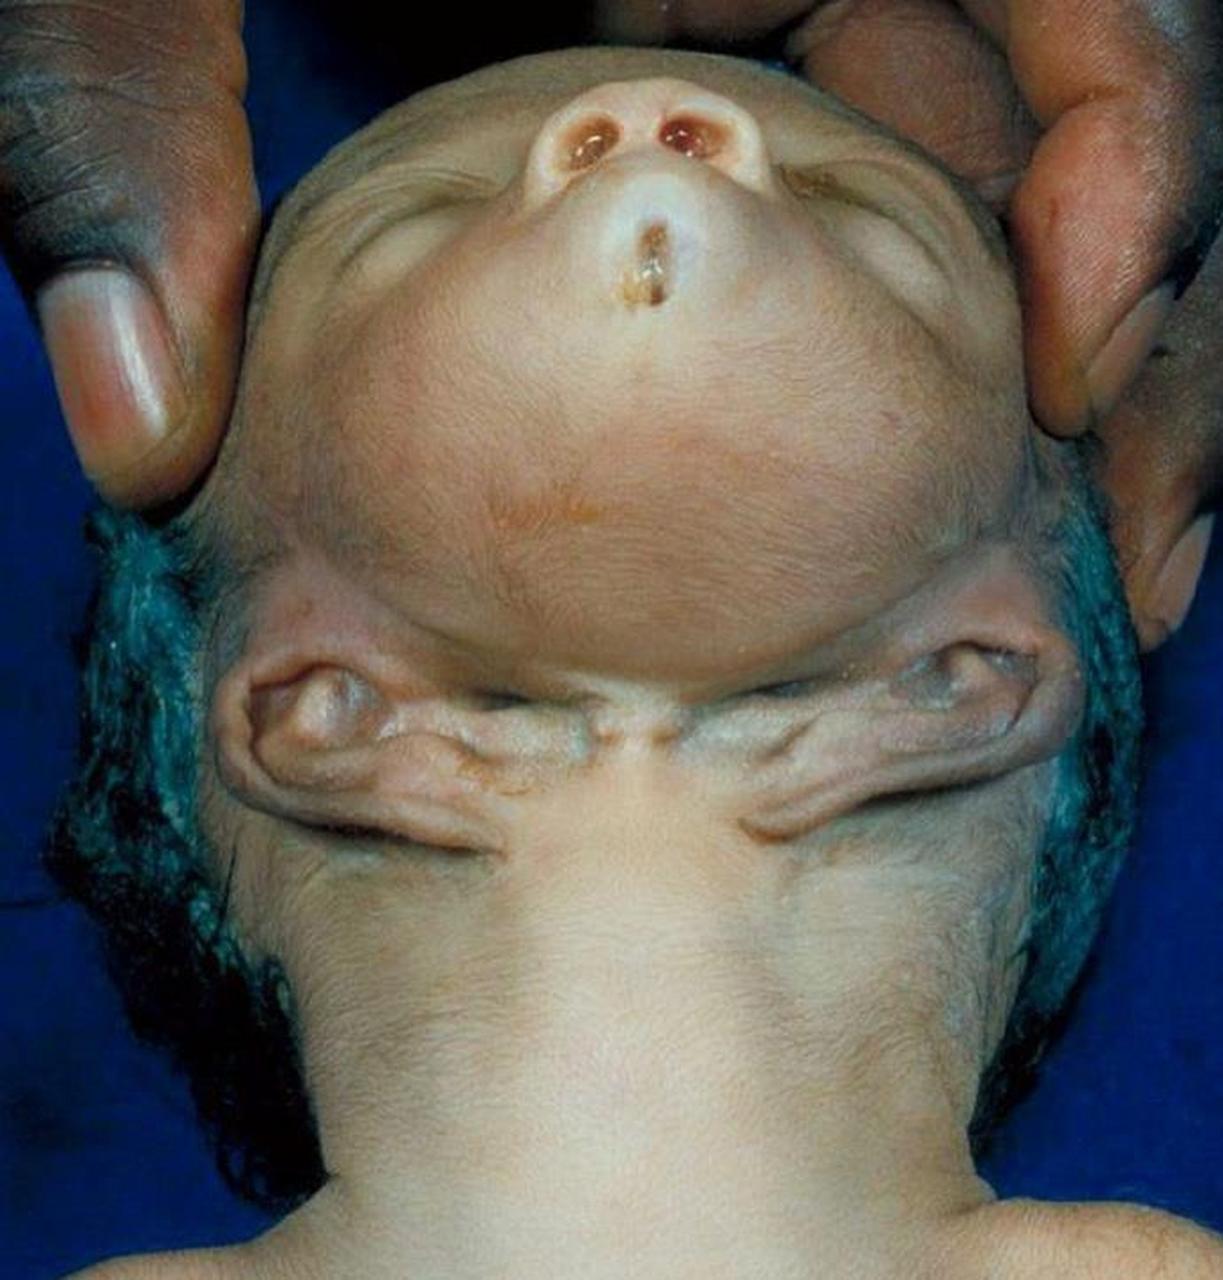 这张照片的对象是一个患有头部畸形的婴儿,这是一种罕见的遗传疾病,每